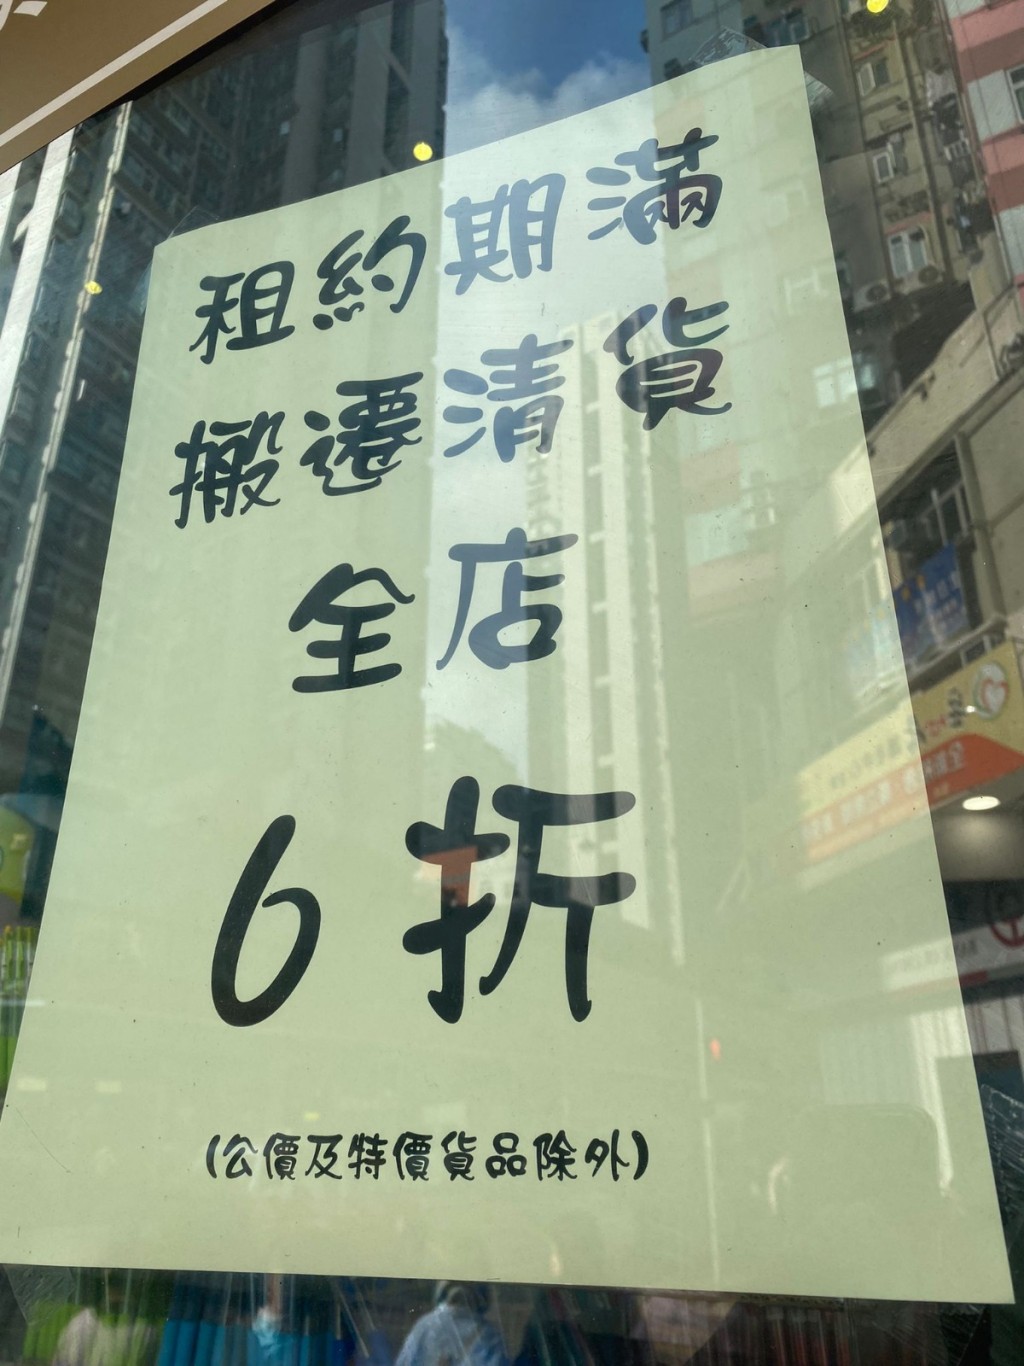 然而，近日就有網民發現中南廣場在店內貼出「租約期滿，搬遷清貨」的告示（圖片來源：Katland Studio＠Facebook）